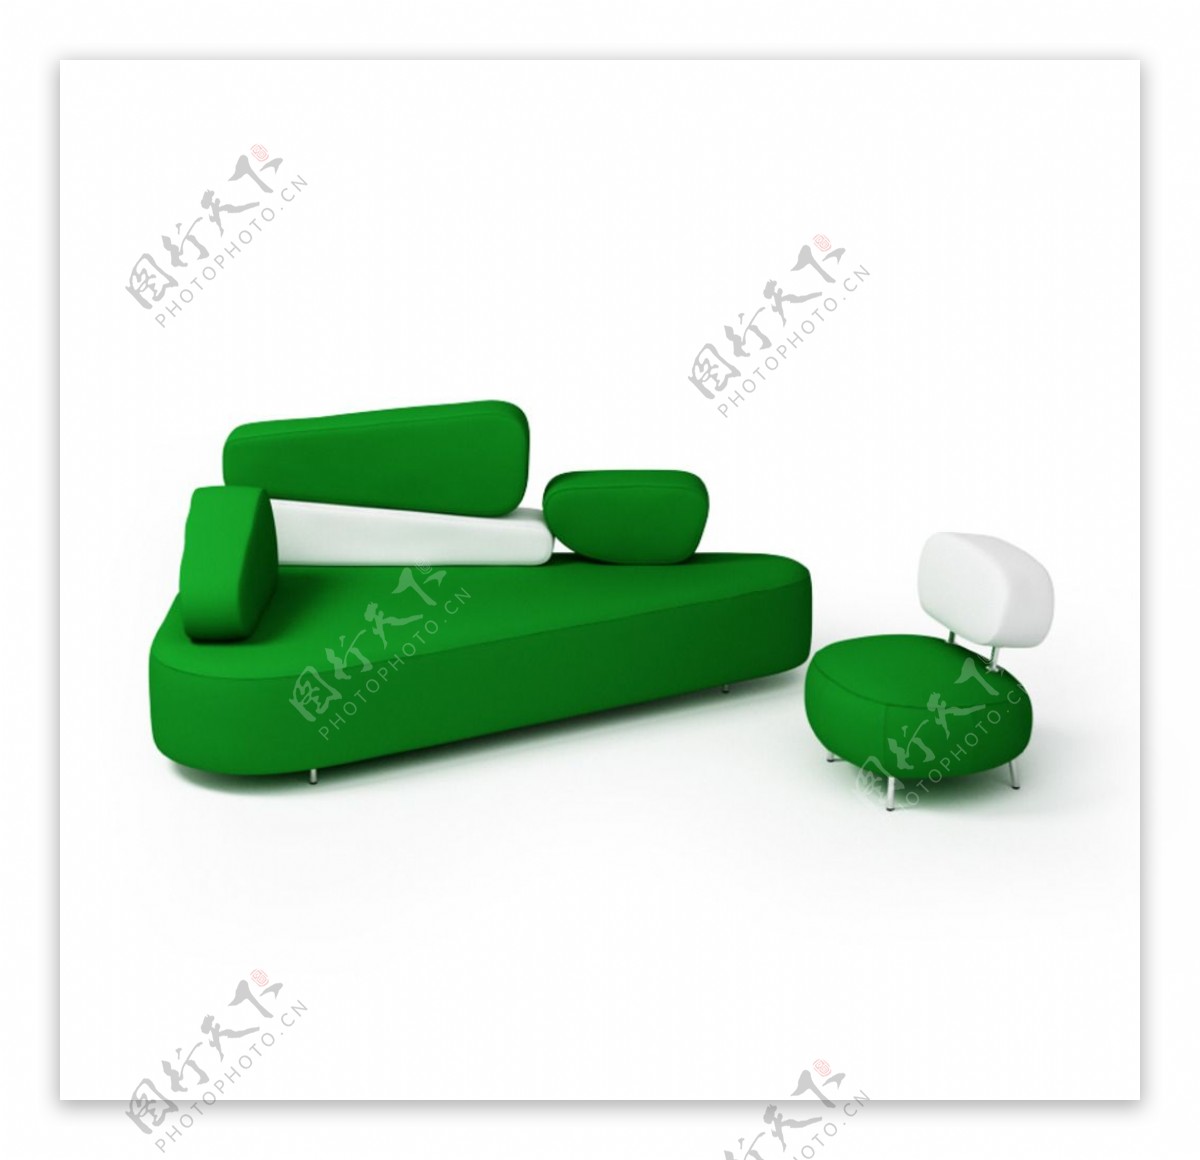 现代组合沙发模型